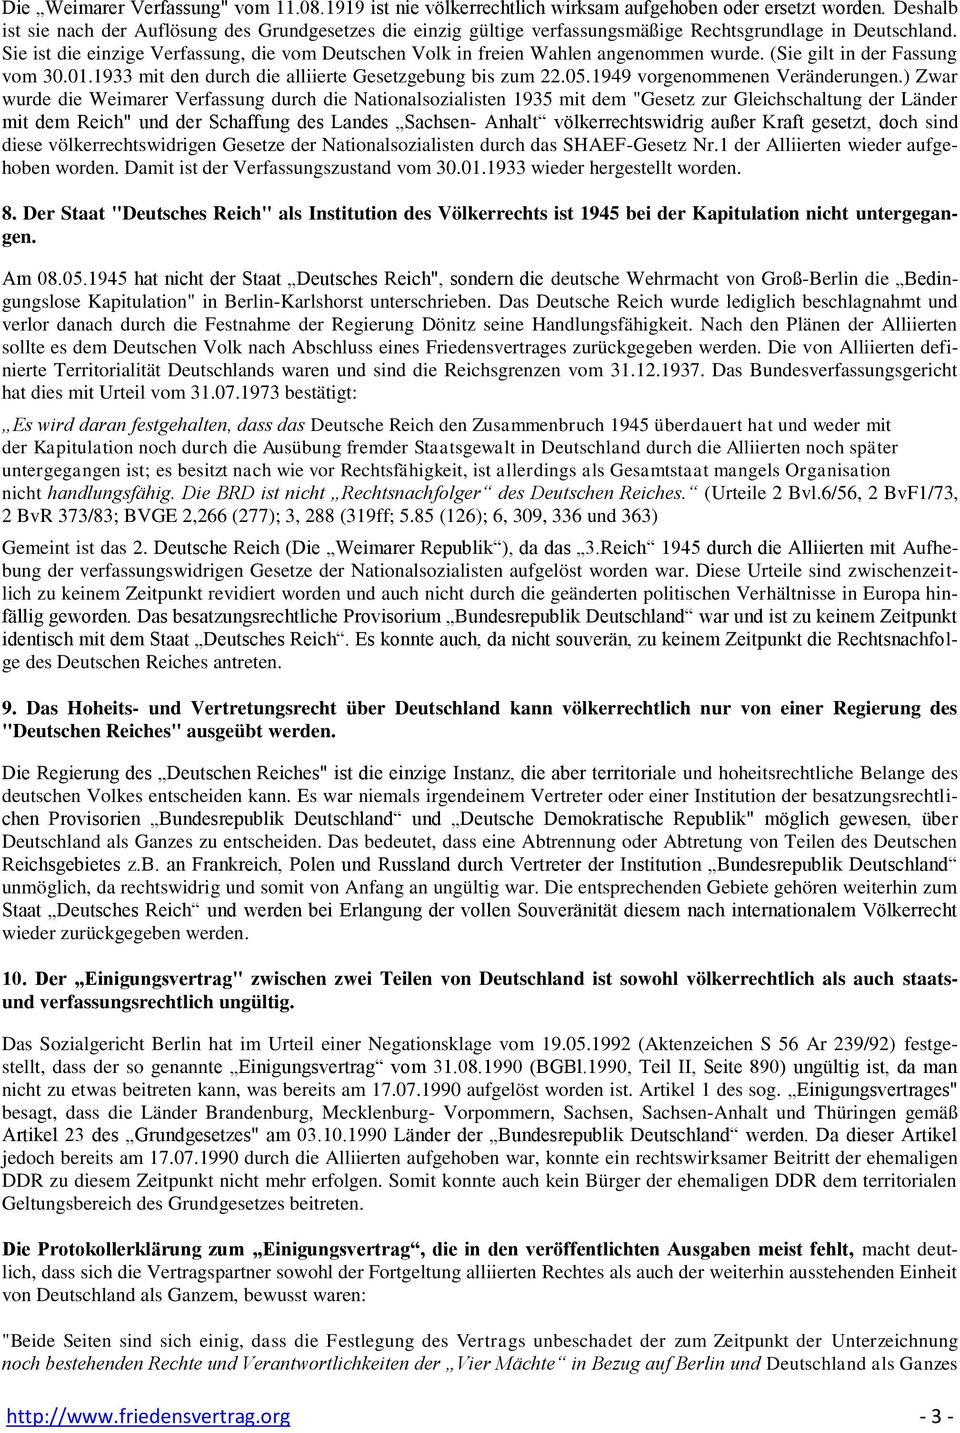 Sie ist die einzige Verfassung, die vom Deutschen Volk in freien Wahlen angenommen wurde. (Sie gilt in der Fassung vom 30.01.1933 mit den durch die alliierte Gesetzgebung bis zum 22.05.